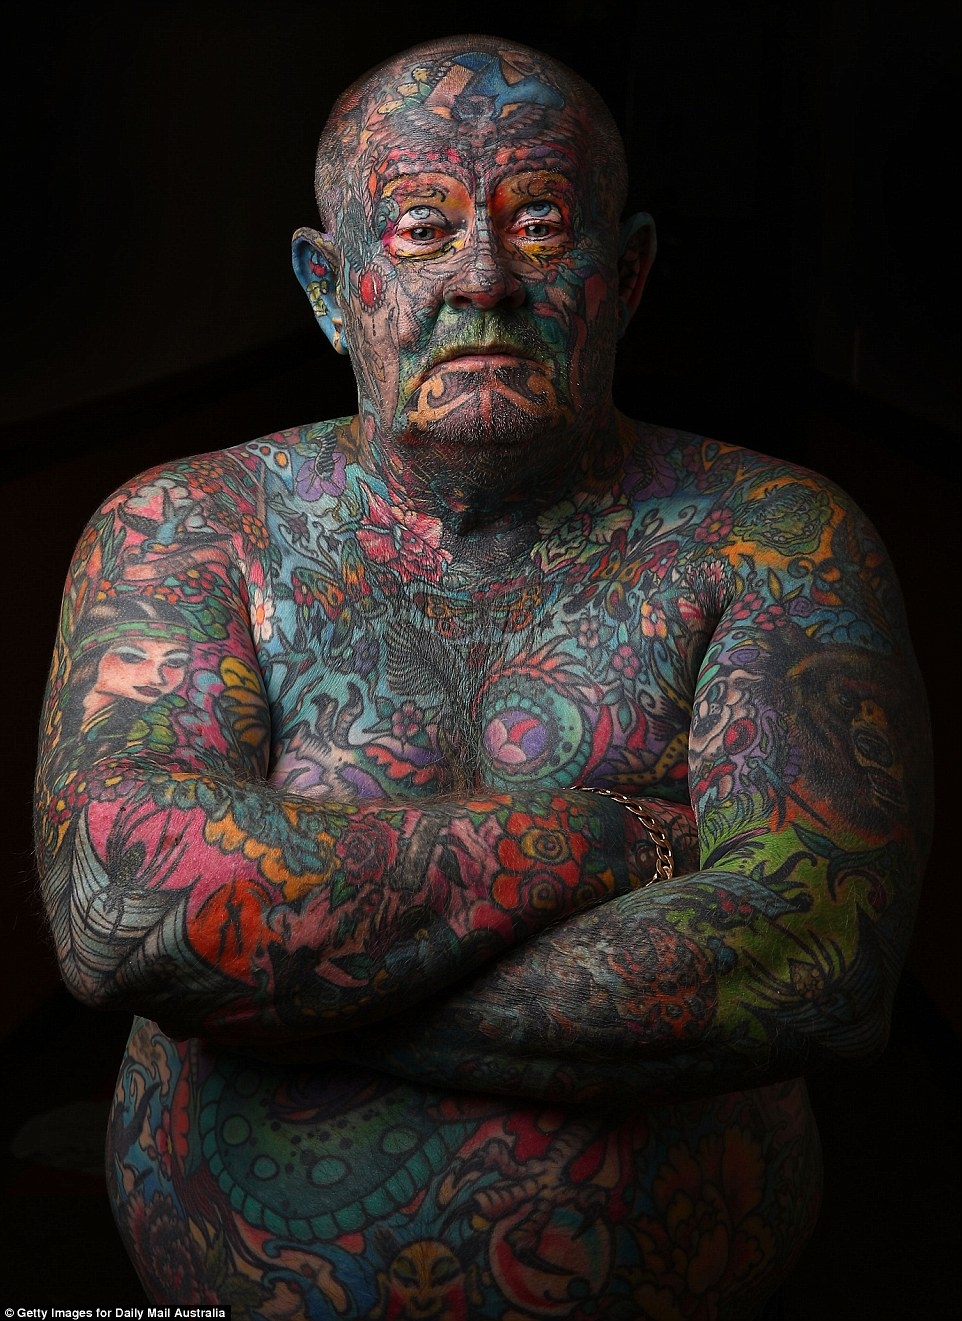 Самый татуированный человек в мире